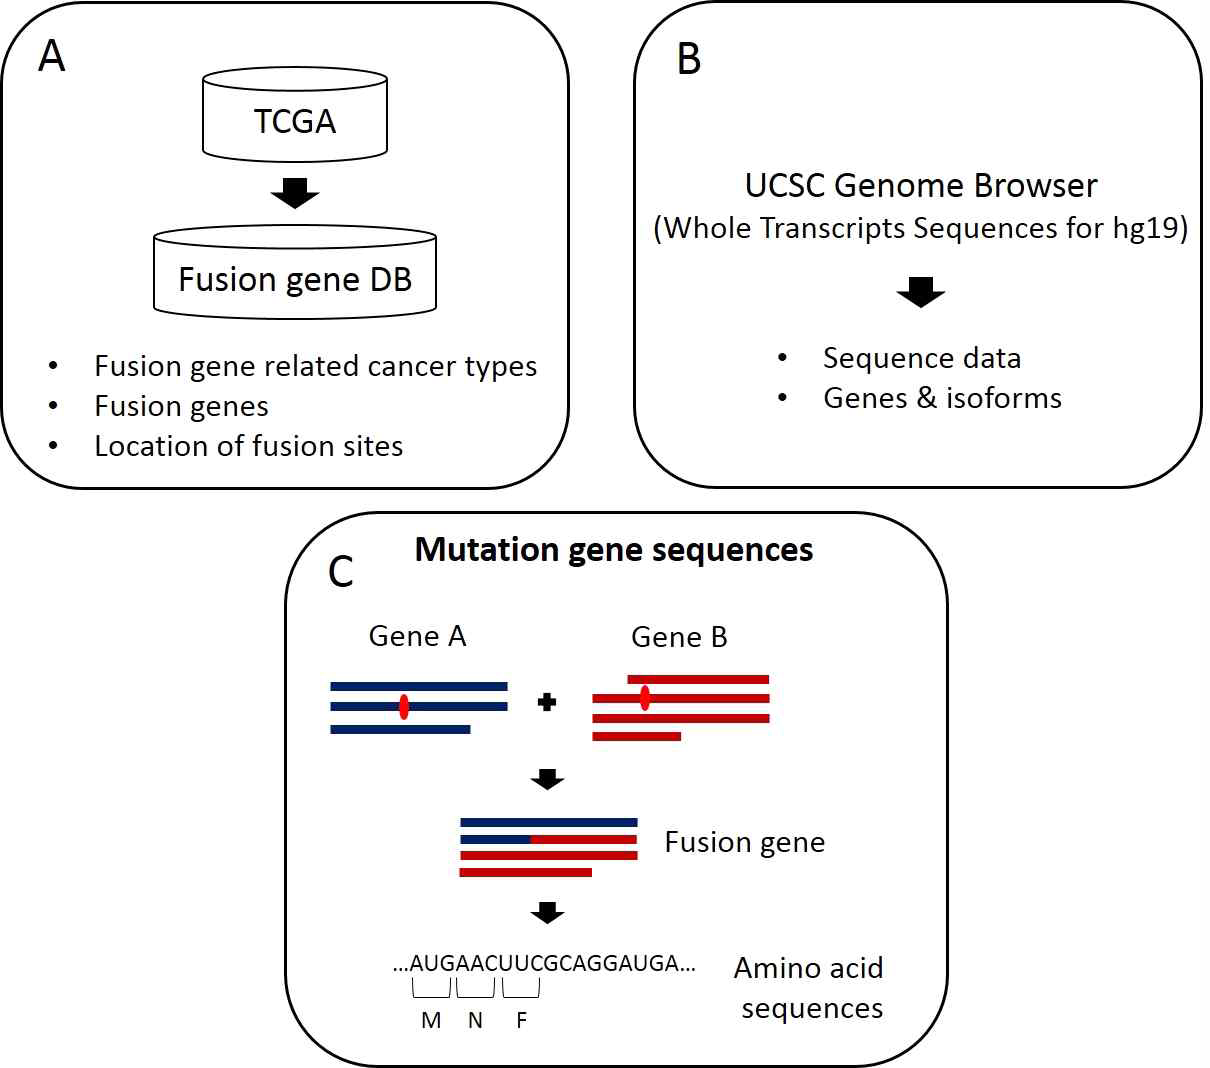 유전자 변이, 유전자 서열 정보를 이용하여 융합 유전자(Fusion Gene)의 아미노산 서열 정보 등의 유전자 변이 정보 구축